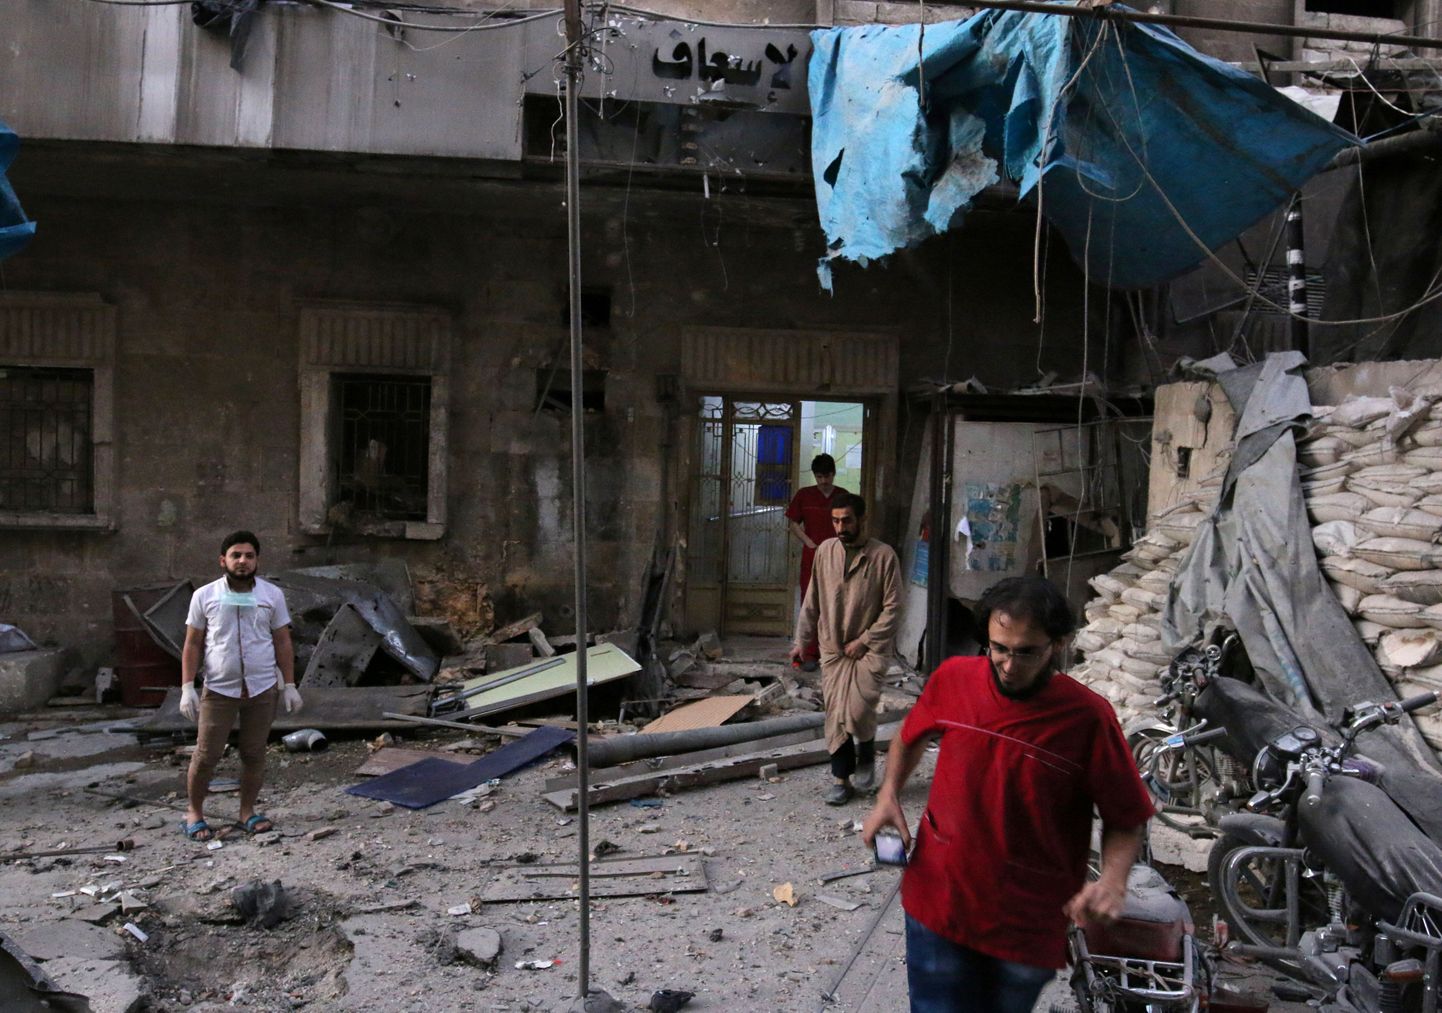 Meedikud üleeile pommitabamuse saanud Aleppo haigla ees.